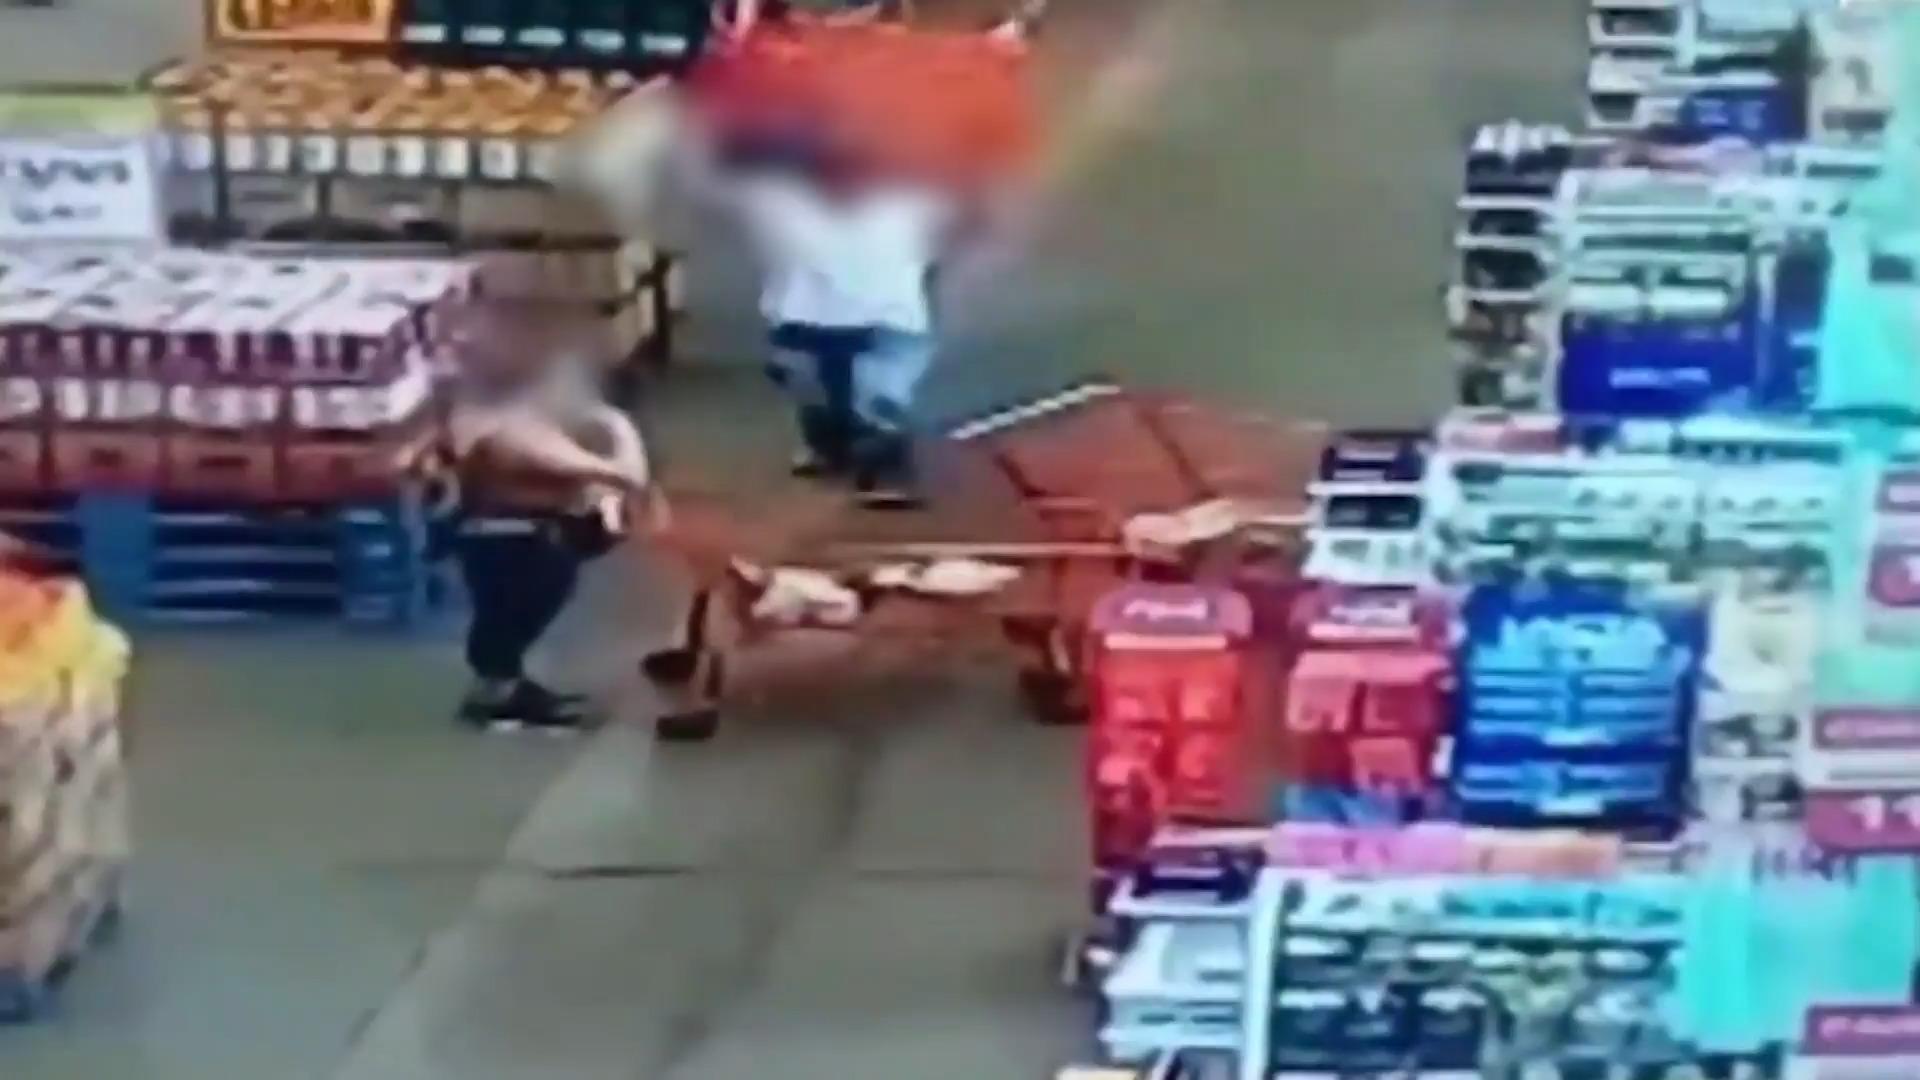 Mann geht mit Einkaufswagen auf Frau los Streit im Supermarkt eskaliert!